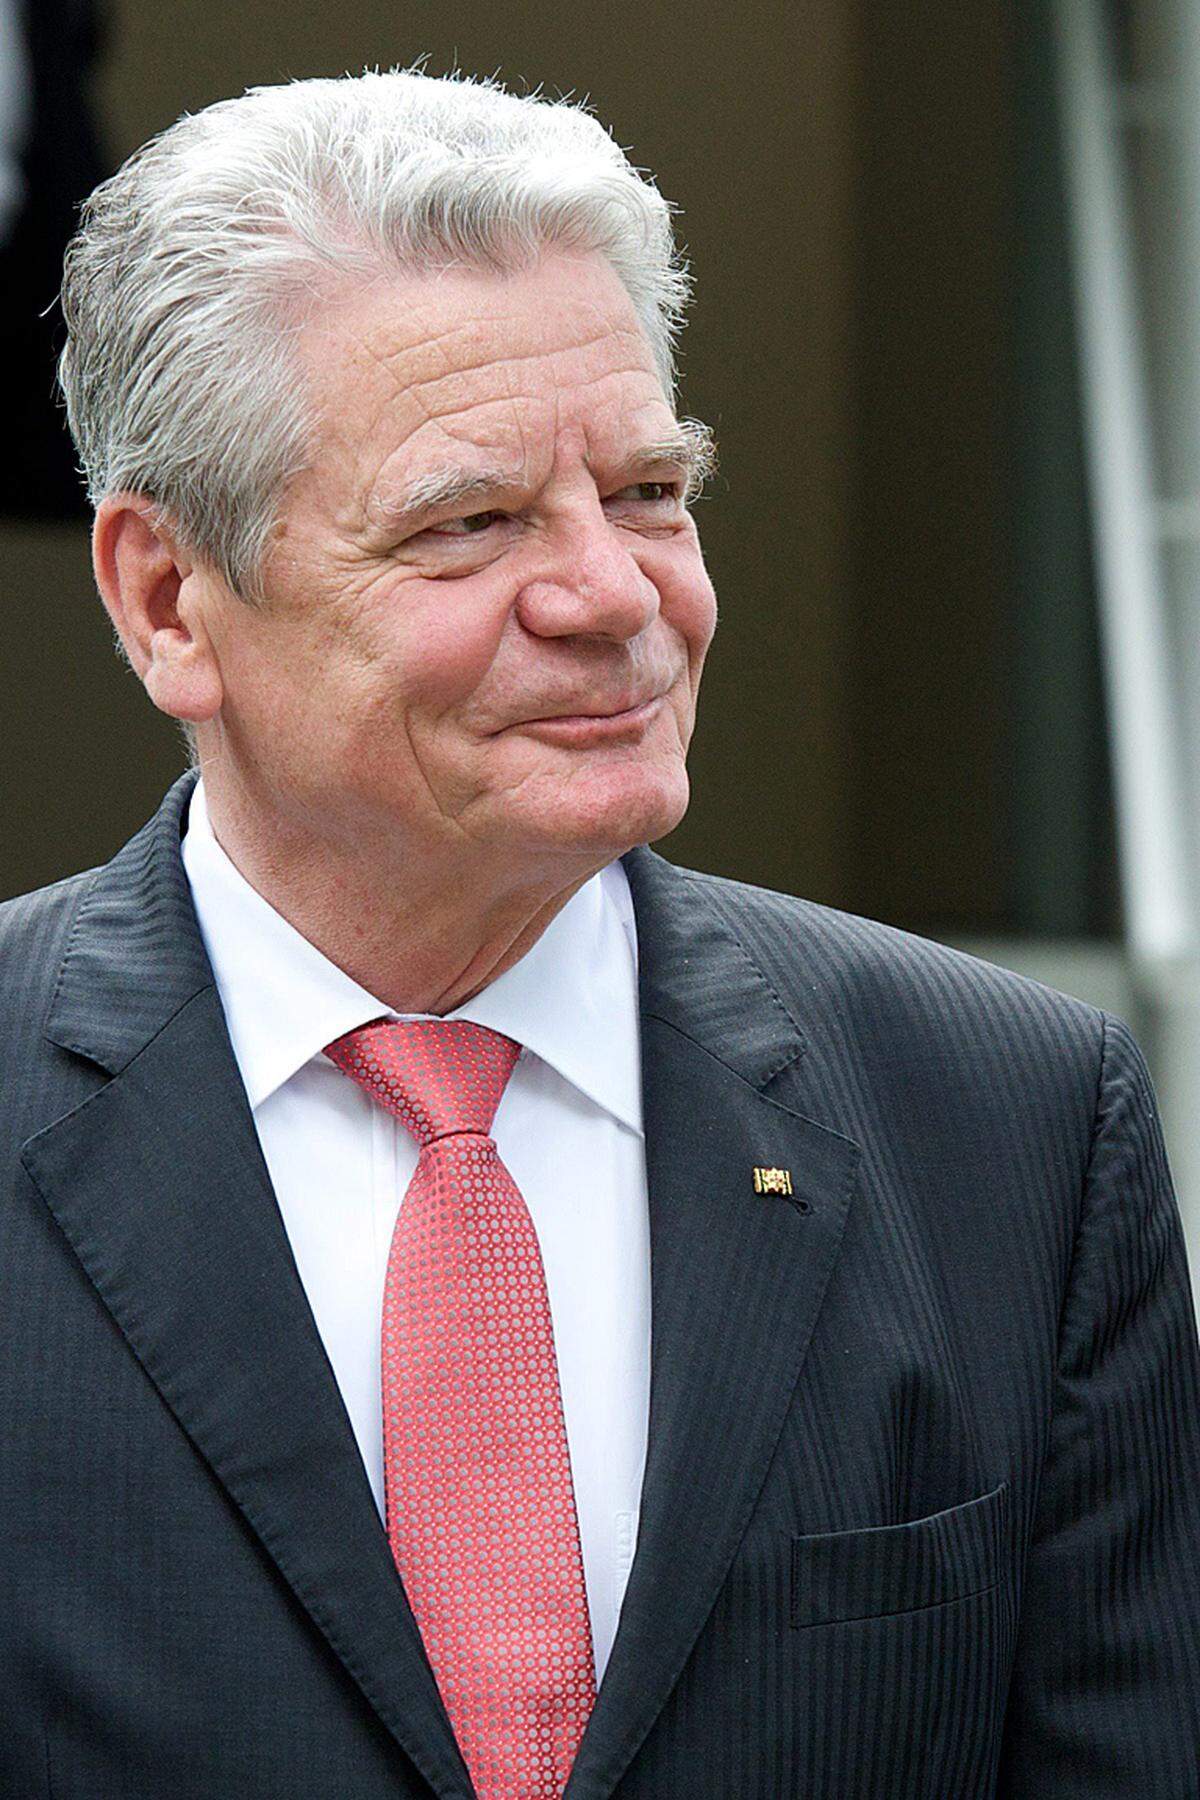 Der deutsche Bundespräsident Joachim Gauck hat der Witwe des FAZ-Herausgebers Frank Schirrmacher, Rebecca Casati, kondoliert. Gauck würdigte ihn als "herausragenden Journalisten und Publizisten".